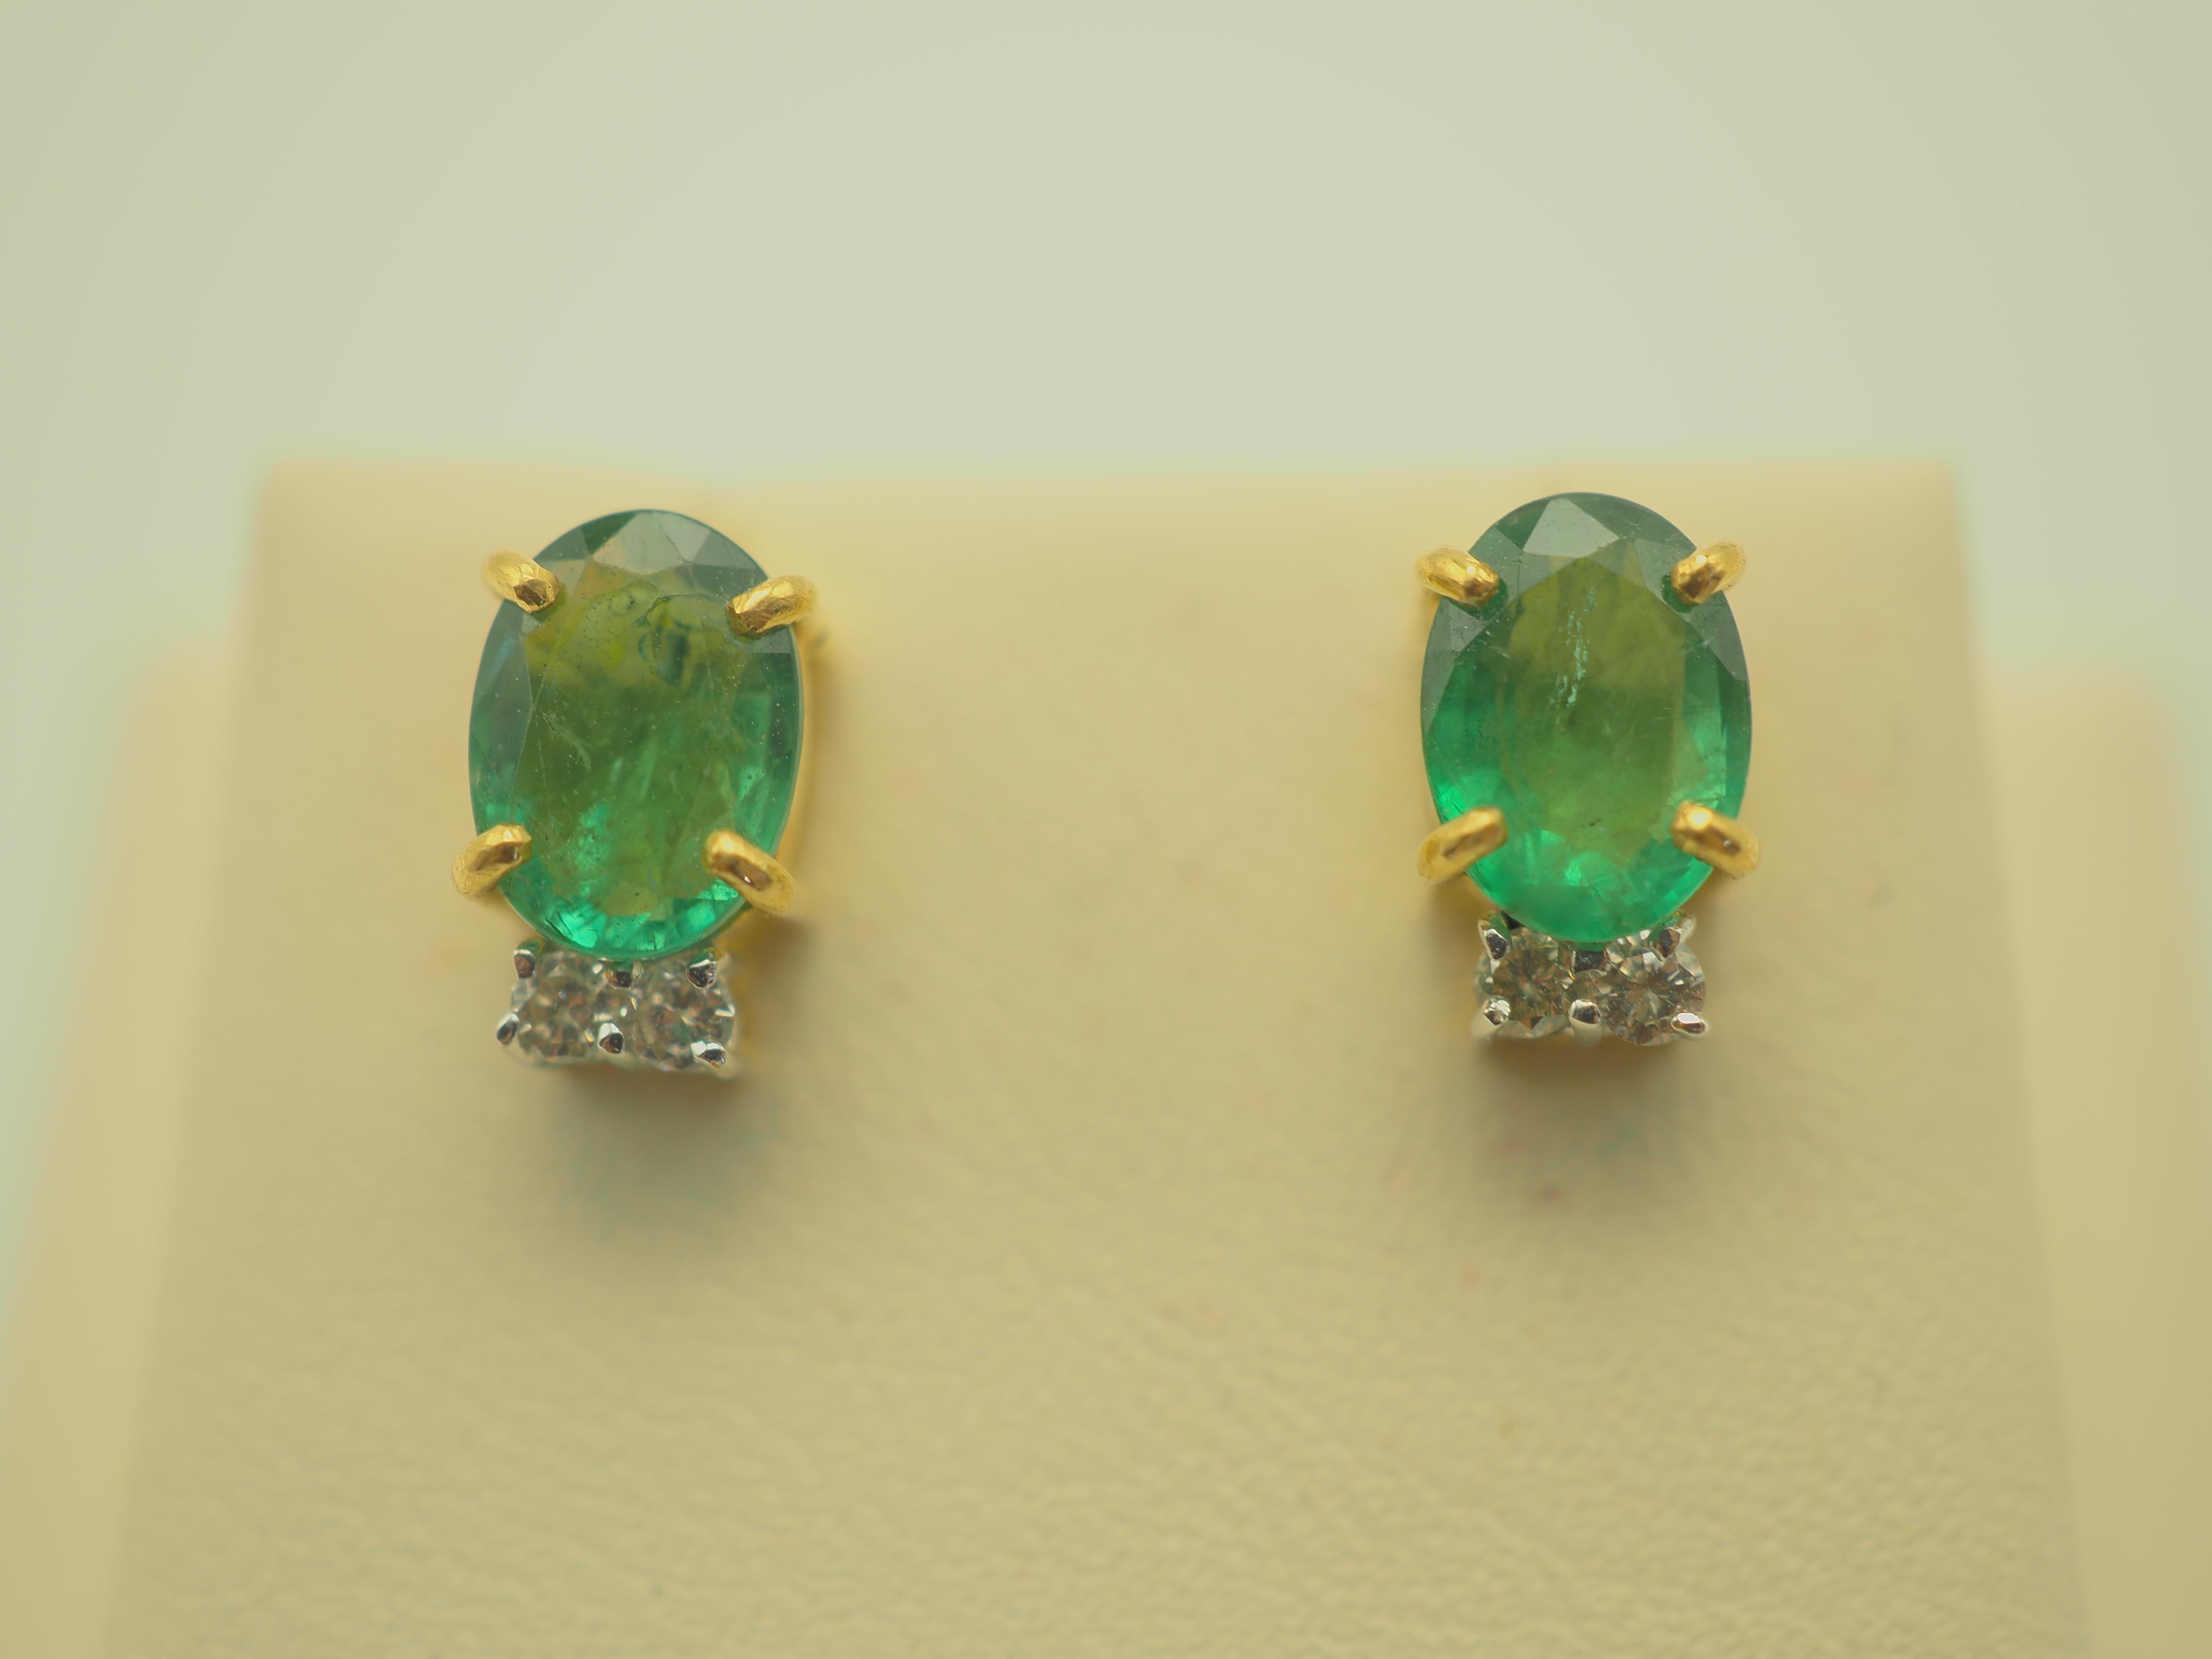 Schöne Smaragd- und Diamant-Ohrstecker für besondere Anlässe. Die ovalen Smaragde sind von heller, grasgrüner Farbe mit natürlichen Einschlüssen. Die vier Diamanten sind lebendig mit weißer Farbe und Auge sauber, die auf die Schönheit des Stückes